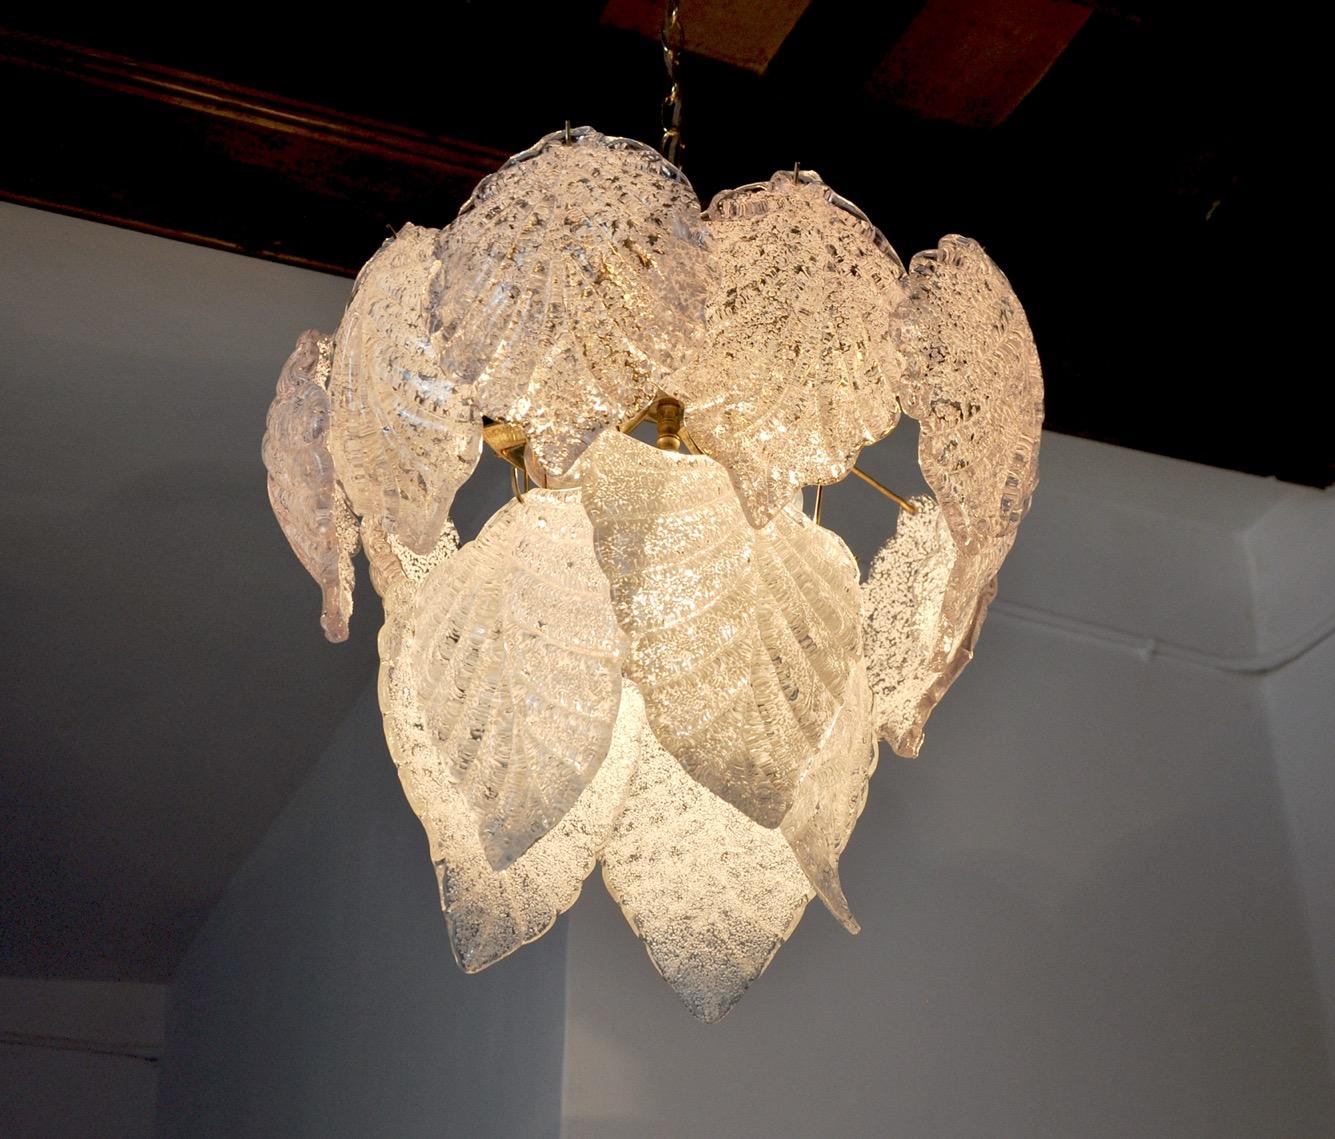 Superbe et rare lustre Murano Mazzega produit en Italie dans les années 60. Cristaux en verre Murano dépoli, prenant la forme de feuilles réparties sur les 2 niveaux d'une structure en métal doré. Objet unique qui illuminera à merveille et apportera